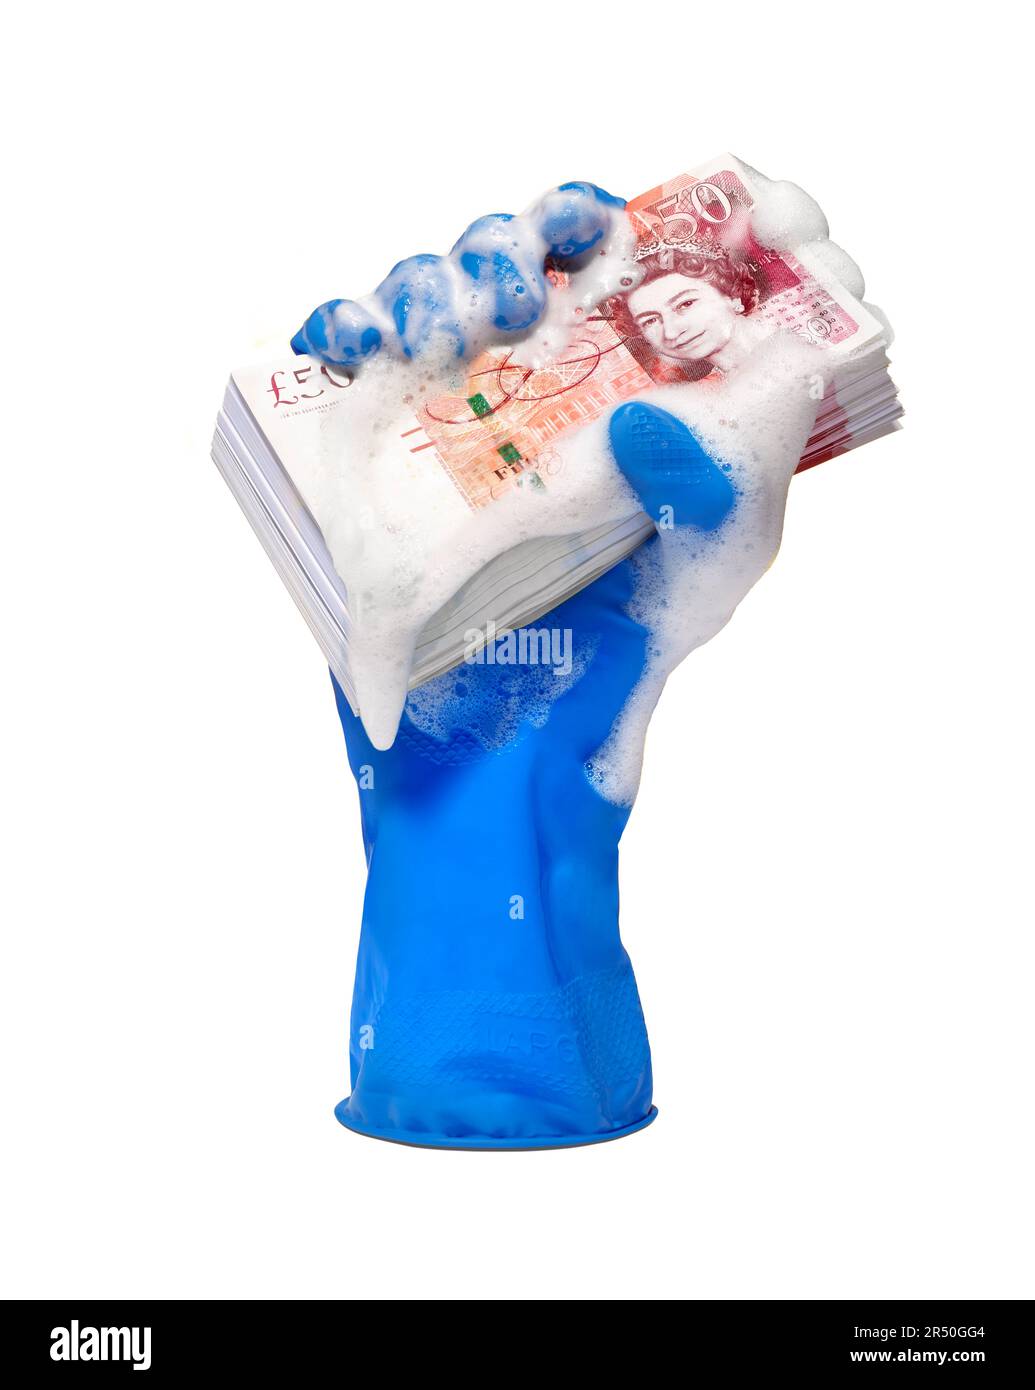 Eine Hand in einem Gummihandschuh, die einen gewaschenen Haufen Geld hält Stockfoto